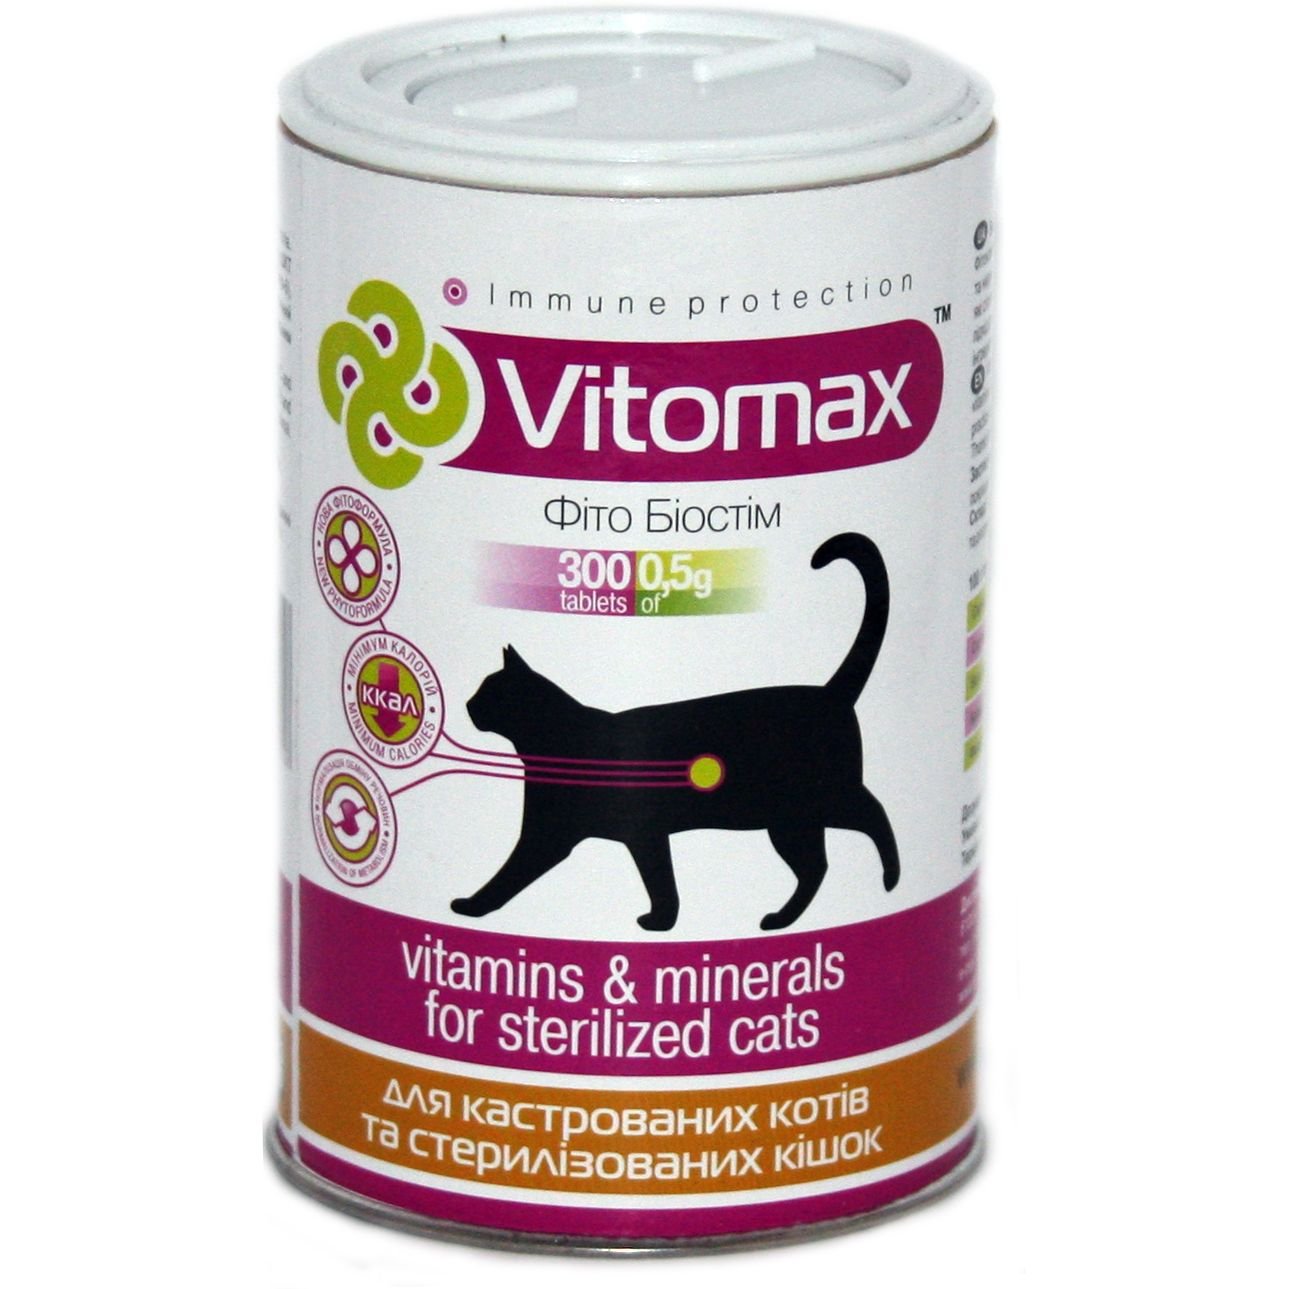 Витамины Vitomax для кастрированных кошек и стерилизованных кошек, 300 таблеток - фото 1